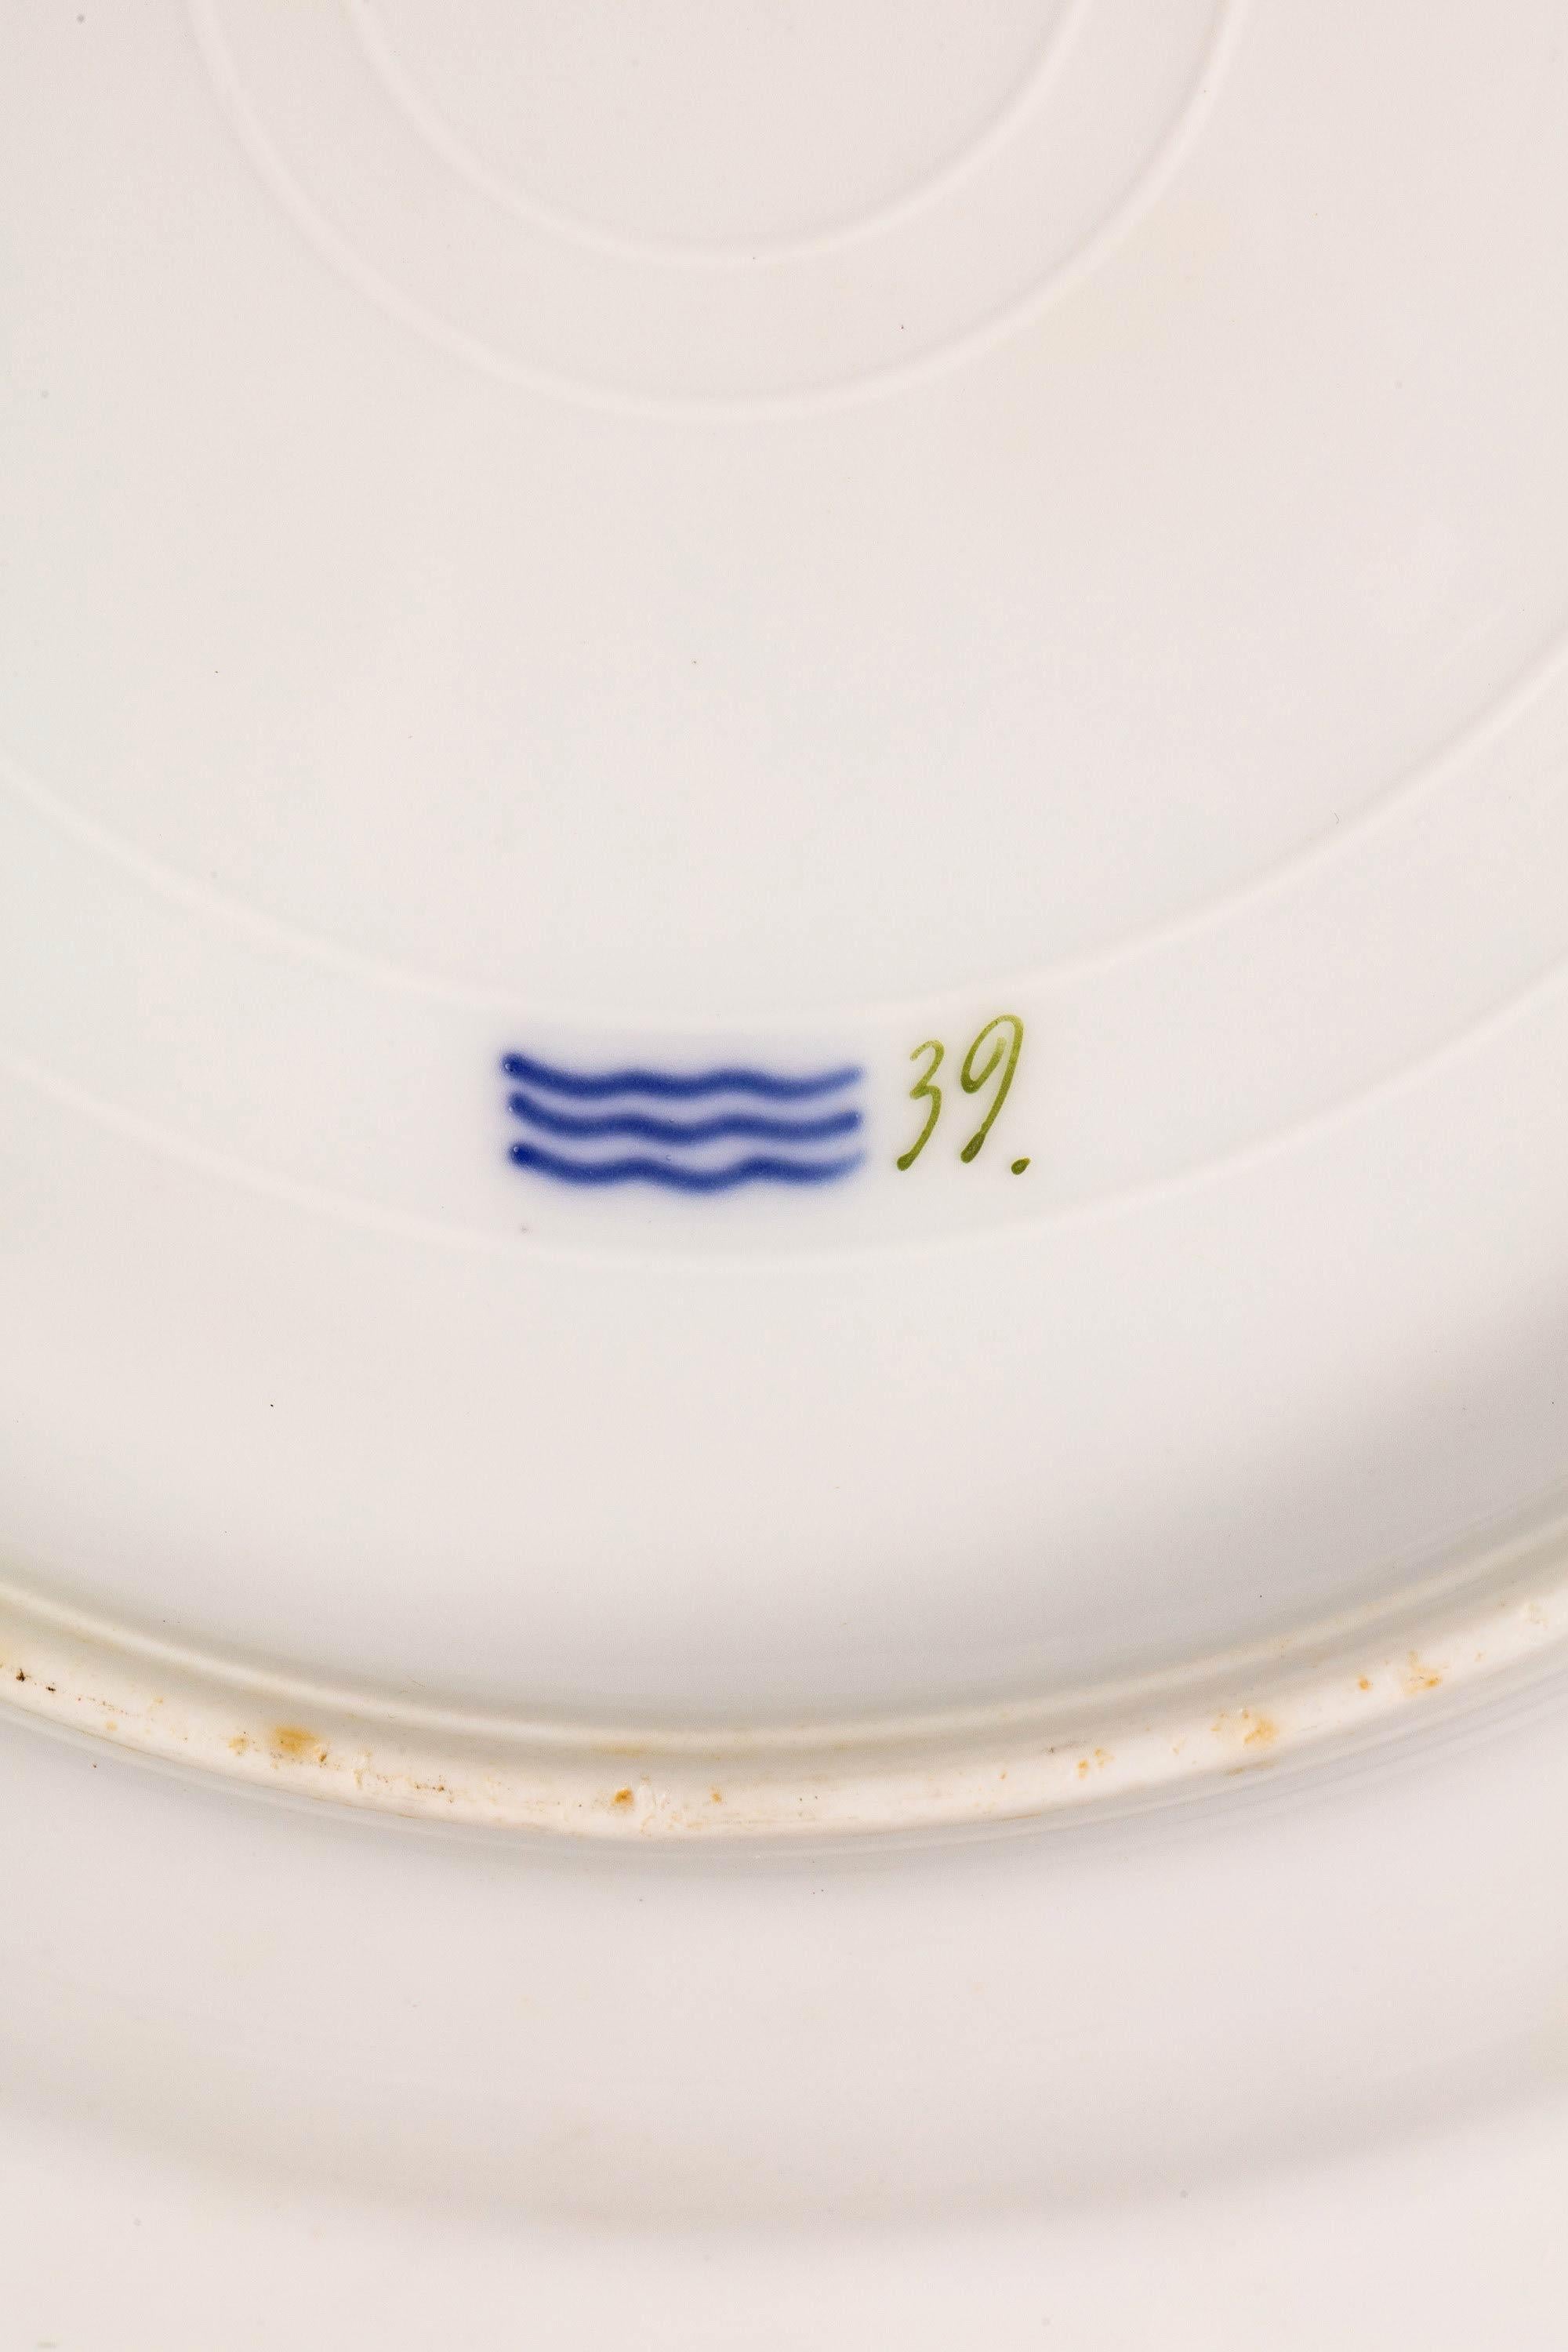 The 248 Piece Royal Danish Porcelain 